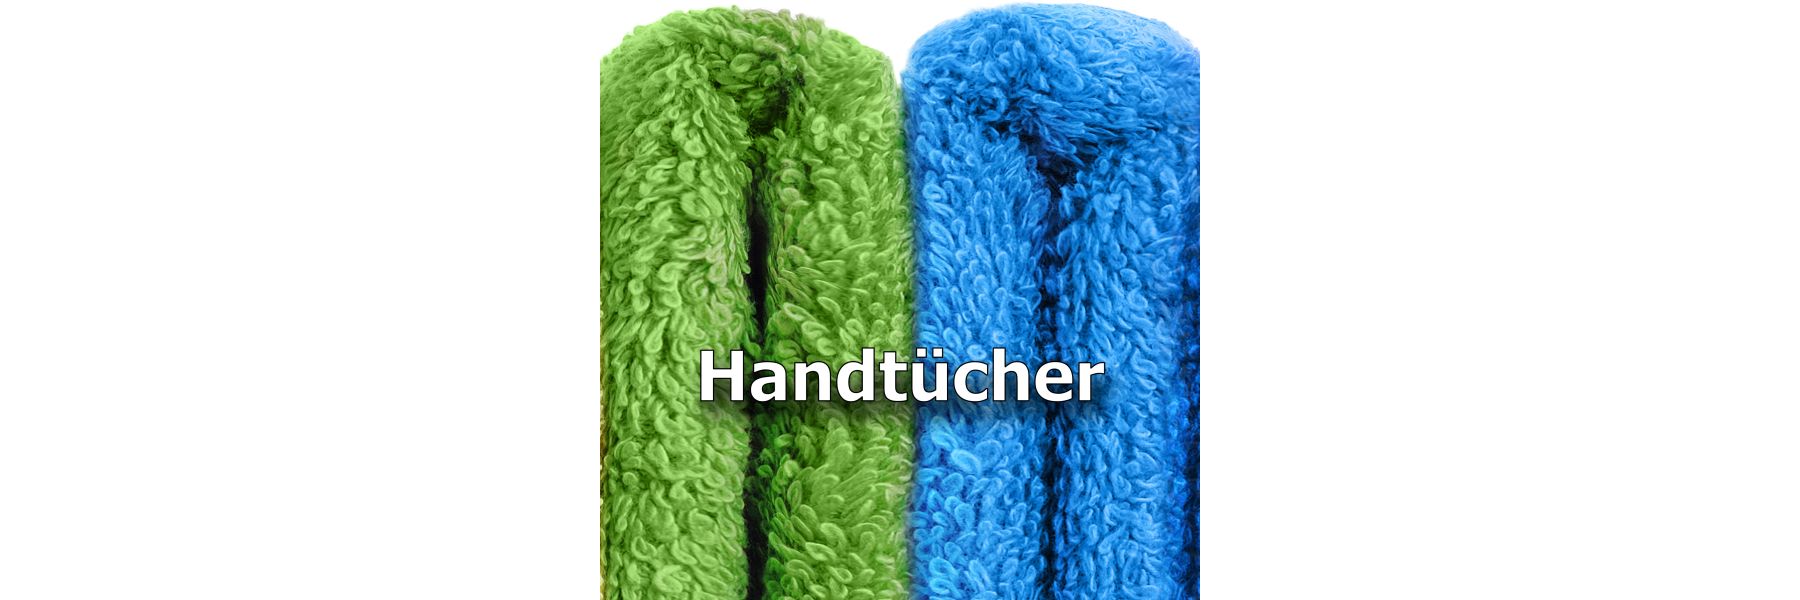 Handtücher - worauf man beim Kaufen achten sollte